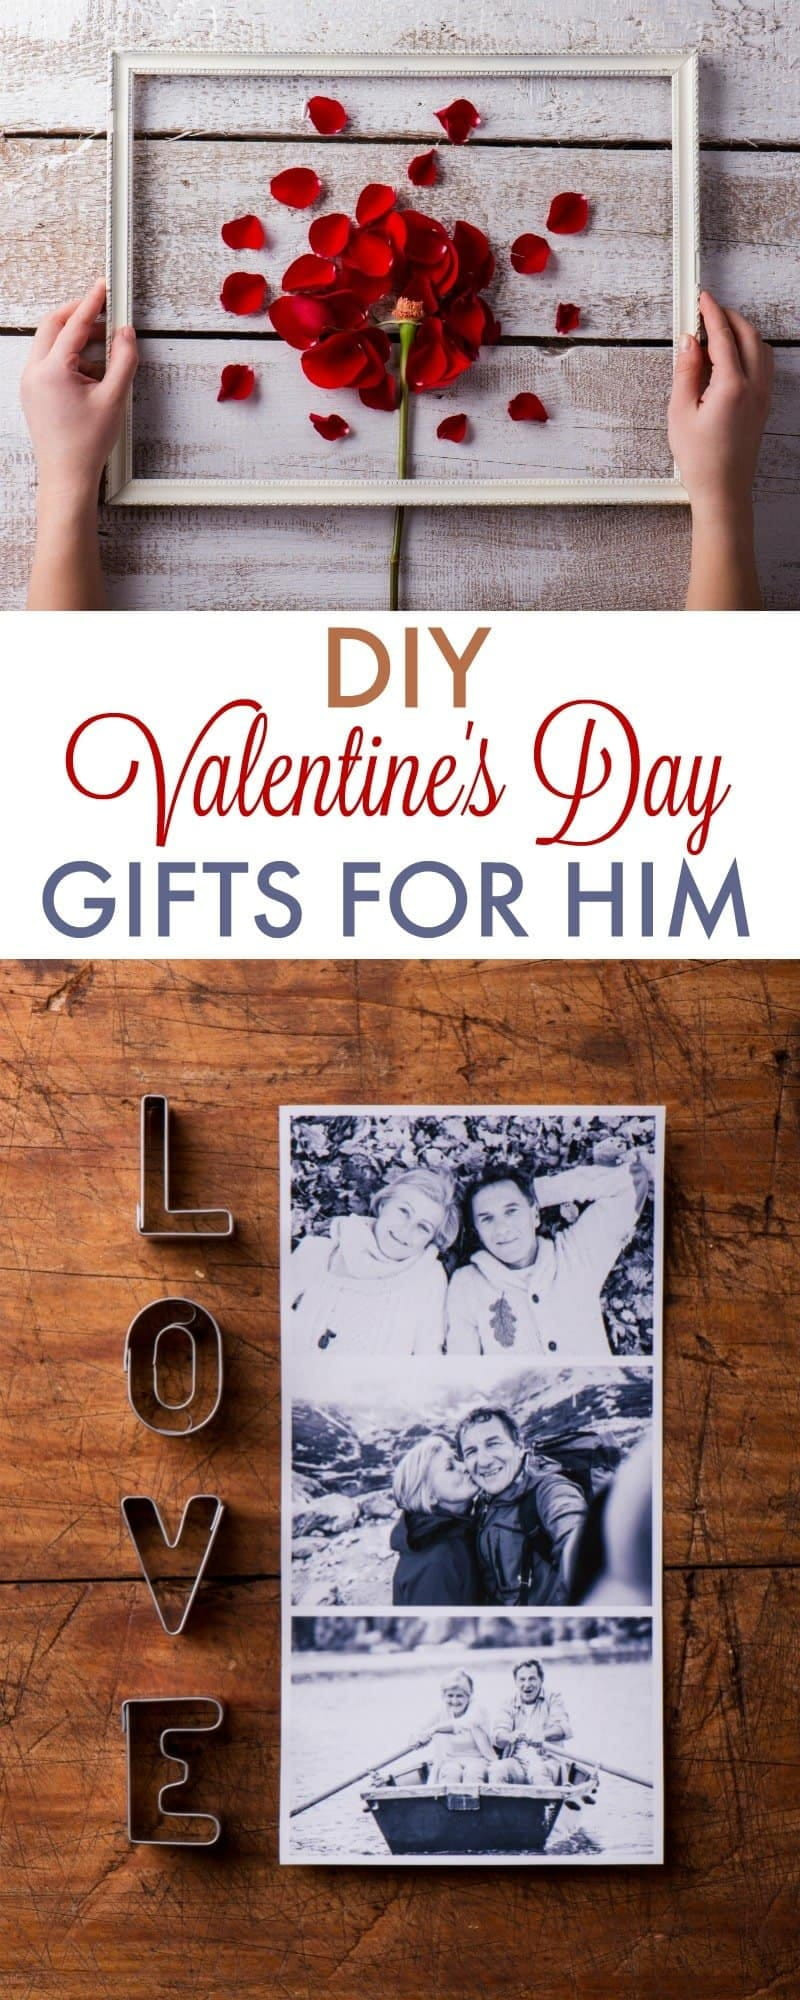 Cute Boyfriend Gift Ideas
 Top 25 Cute Sentimental Gift Ideas for Boyfriend – Home